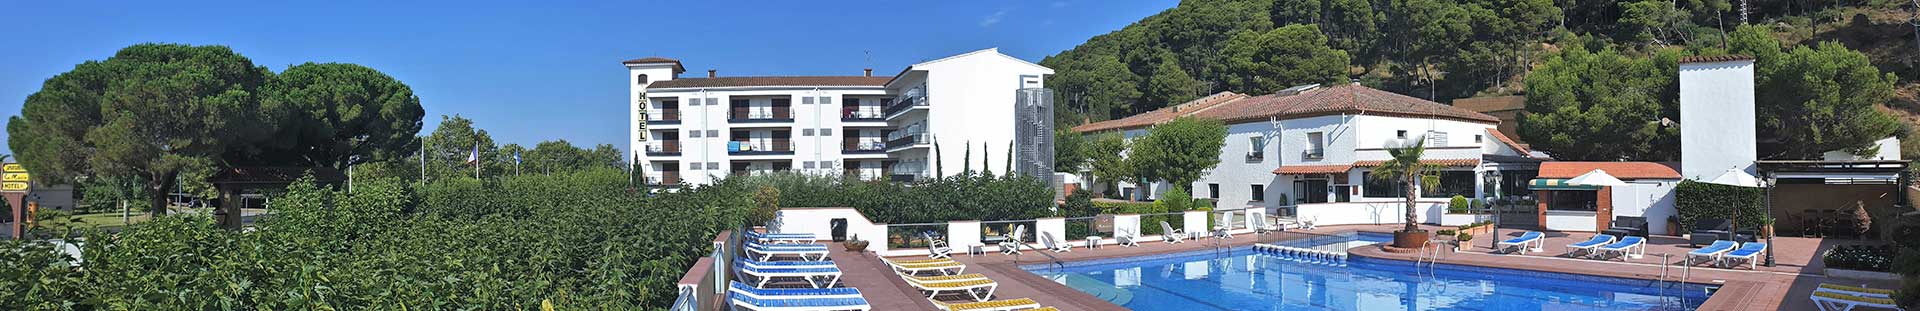 Das Hotel La Masia in Estartit bietet eine breite Palette an Einrichtungen und Serviceleistungen